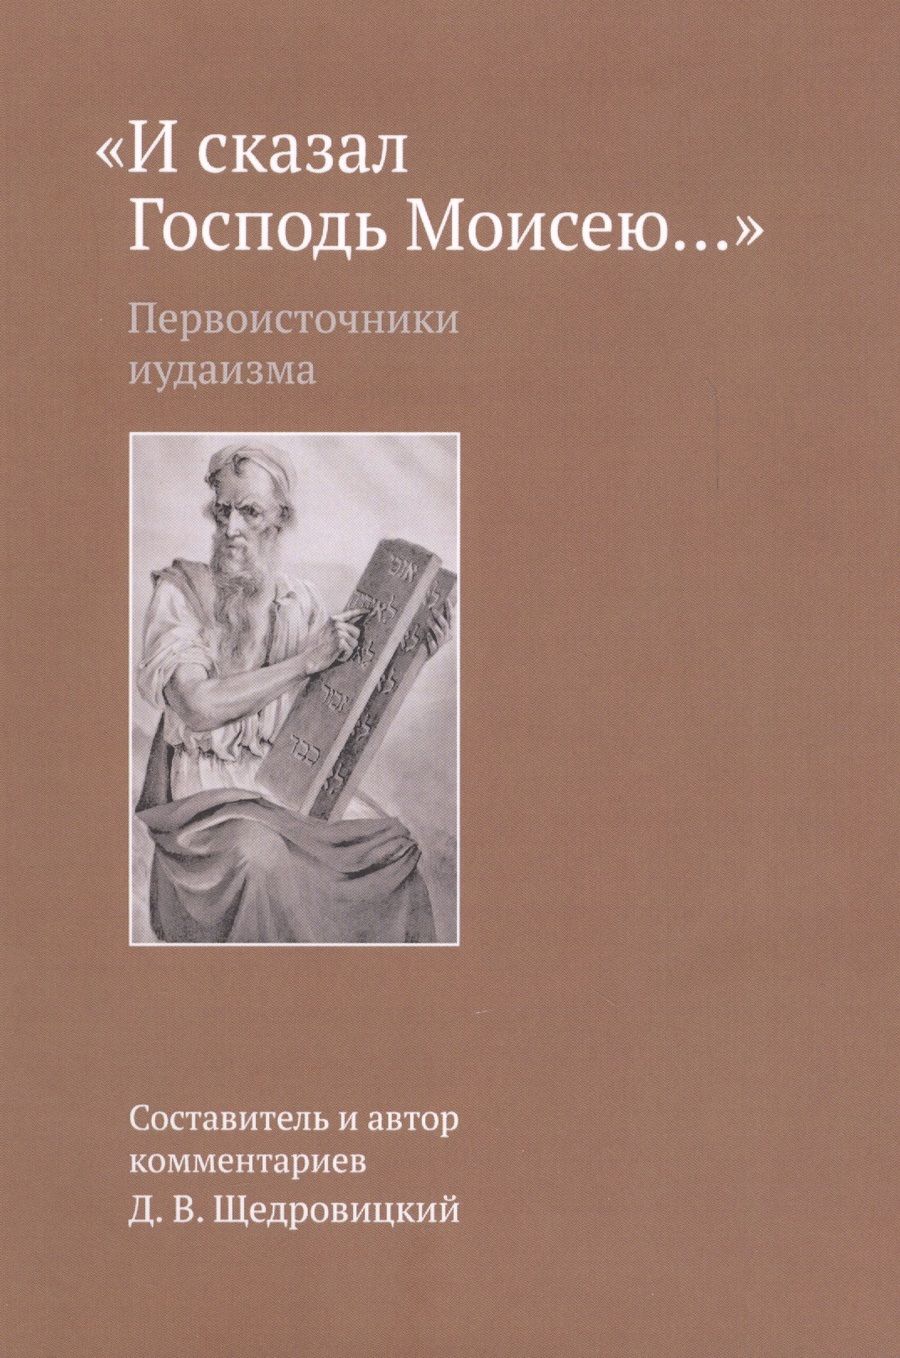 Обложка книги "Щедровицкий: И сказал Господь Моисею…"